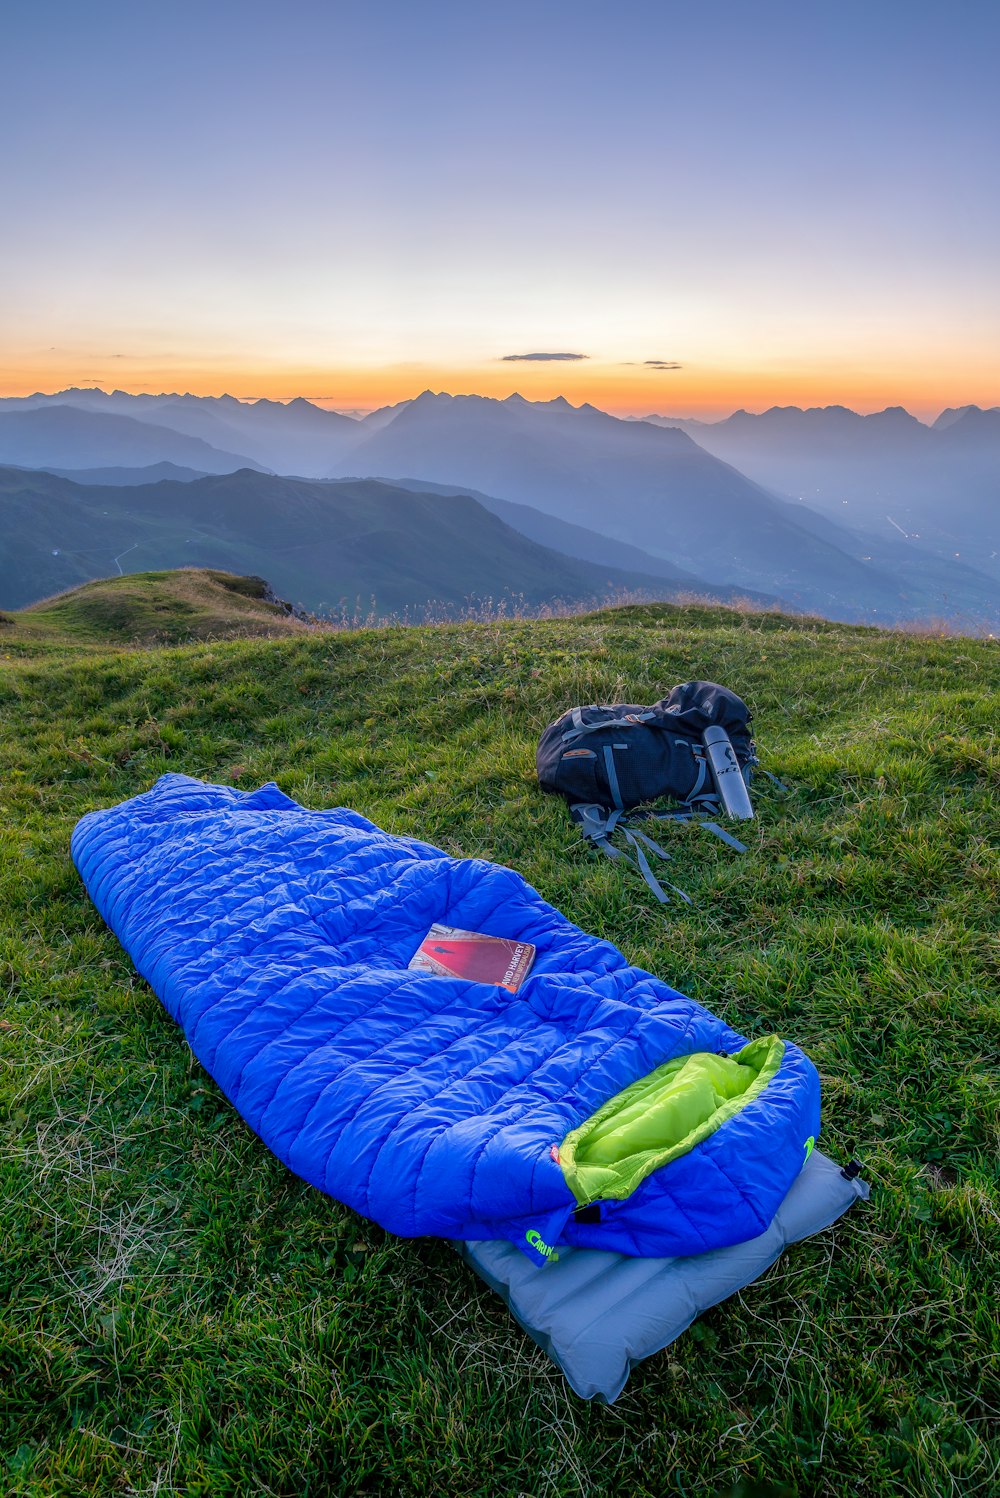 blue sleeping bag on mountain during daytime